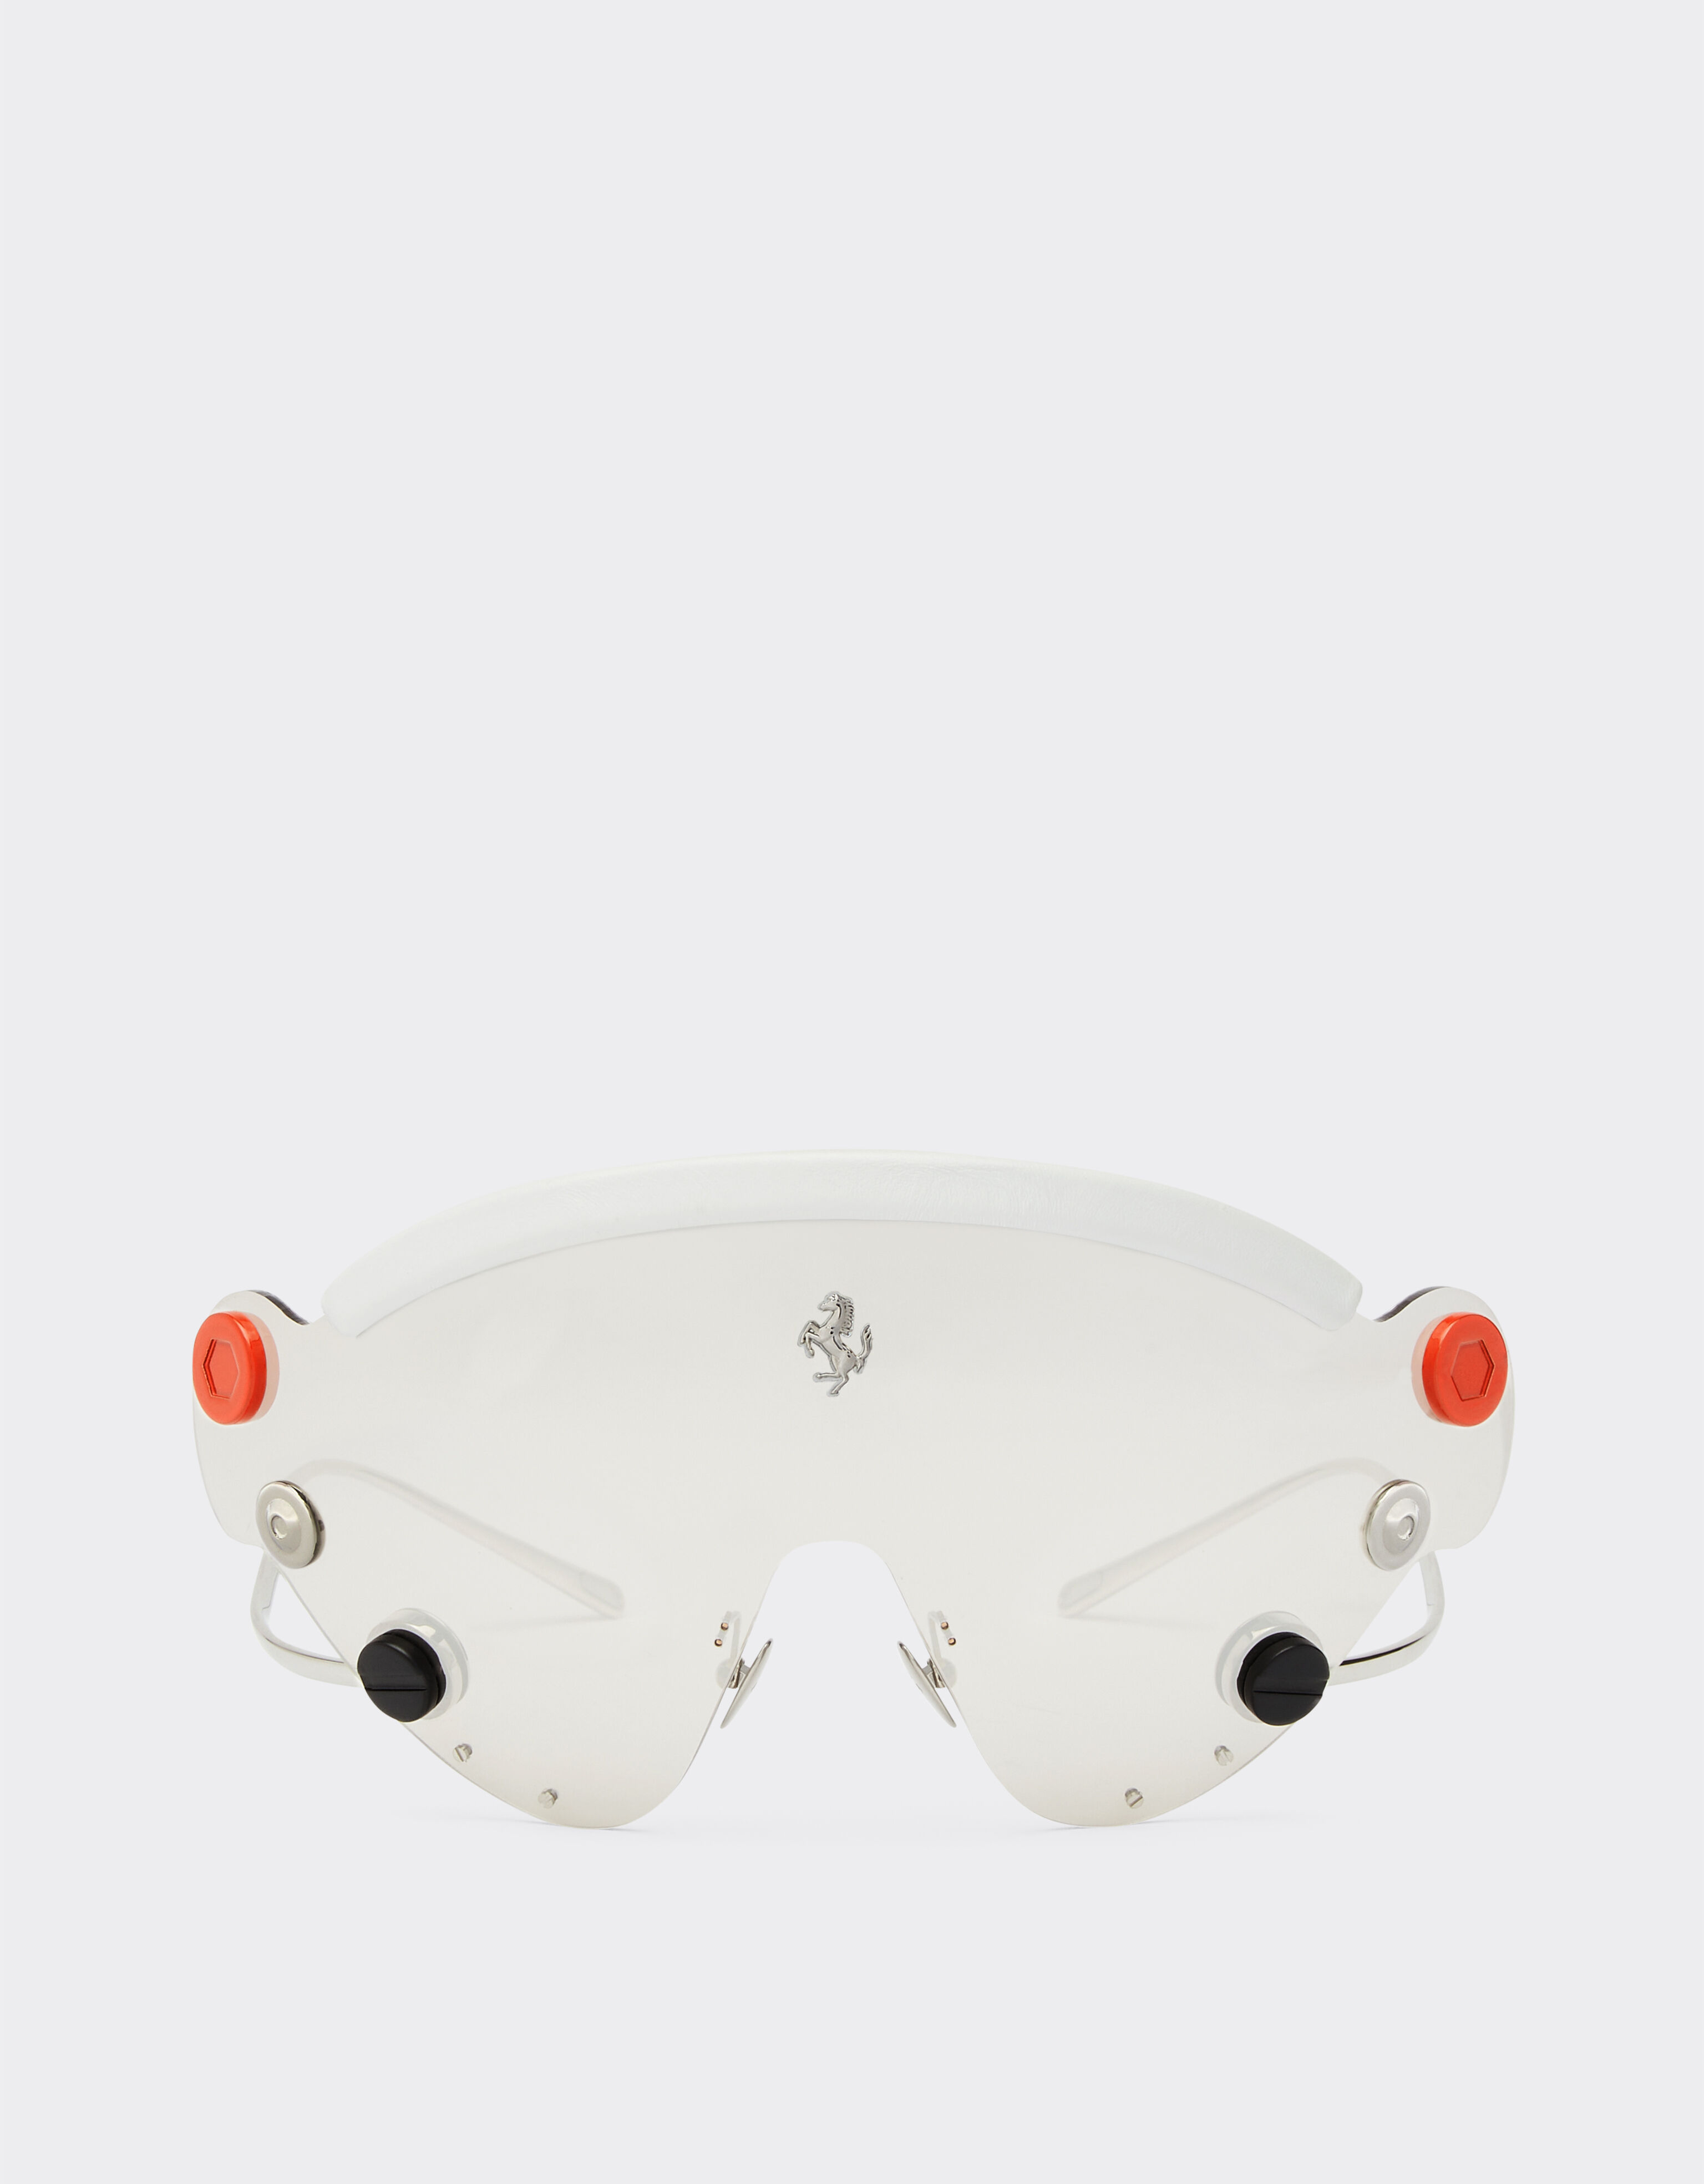 Ferrari Lunettes de soleil masque Limited Edition Ferrari en métal avec masque argenté effet miroir Argent F1247f